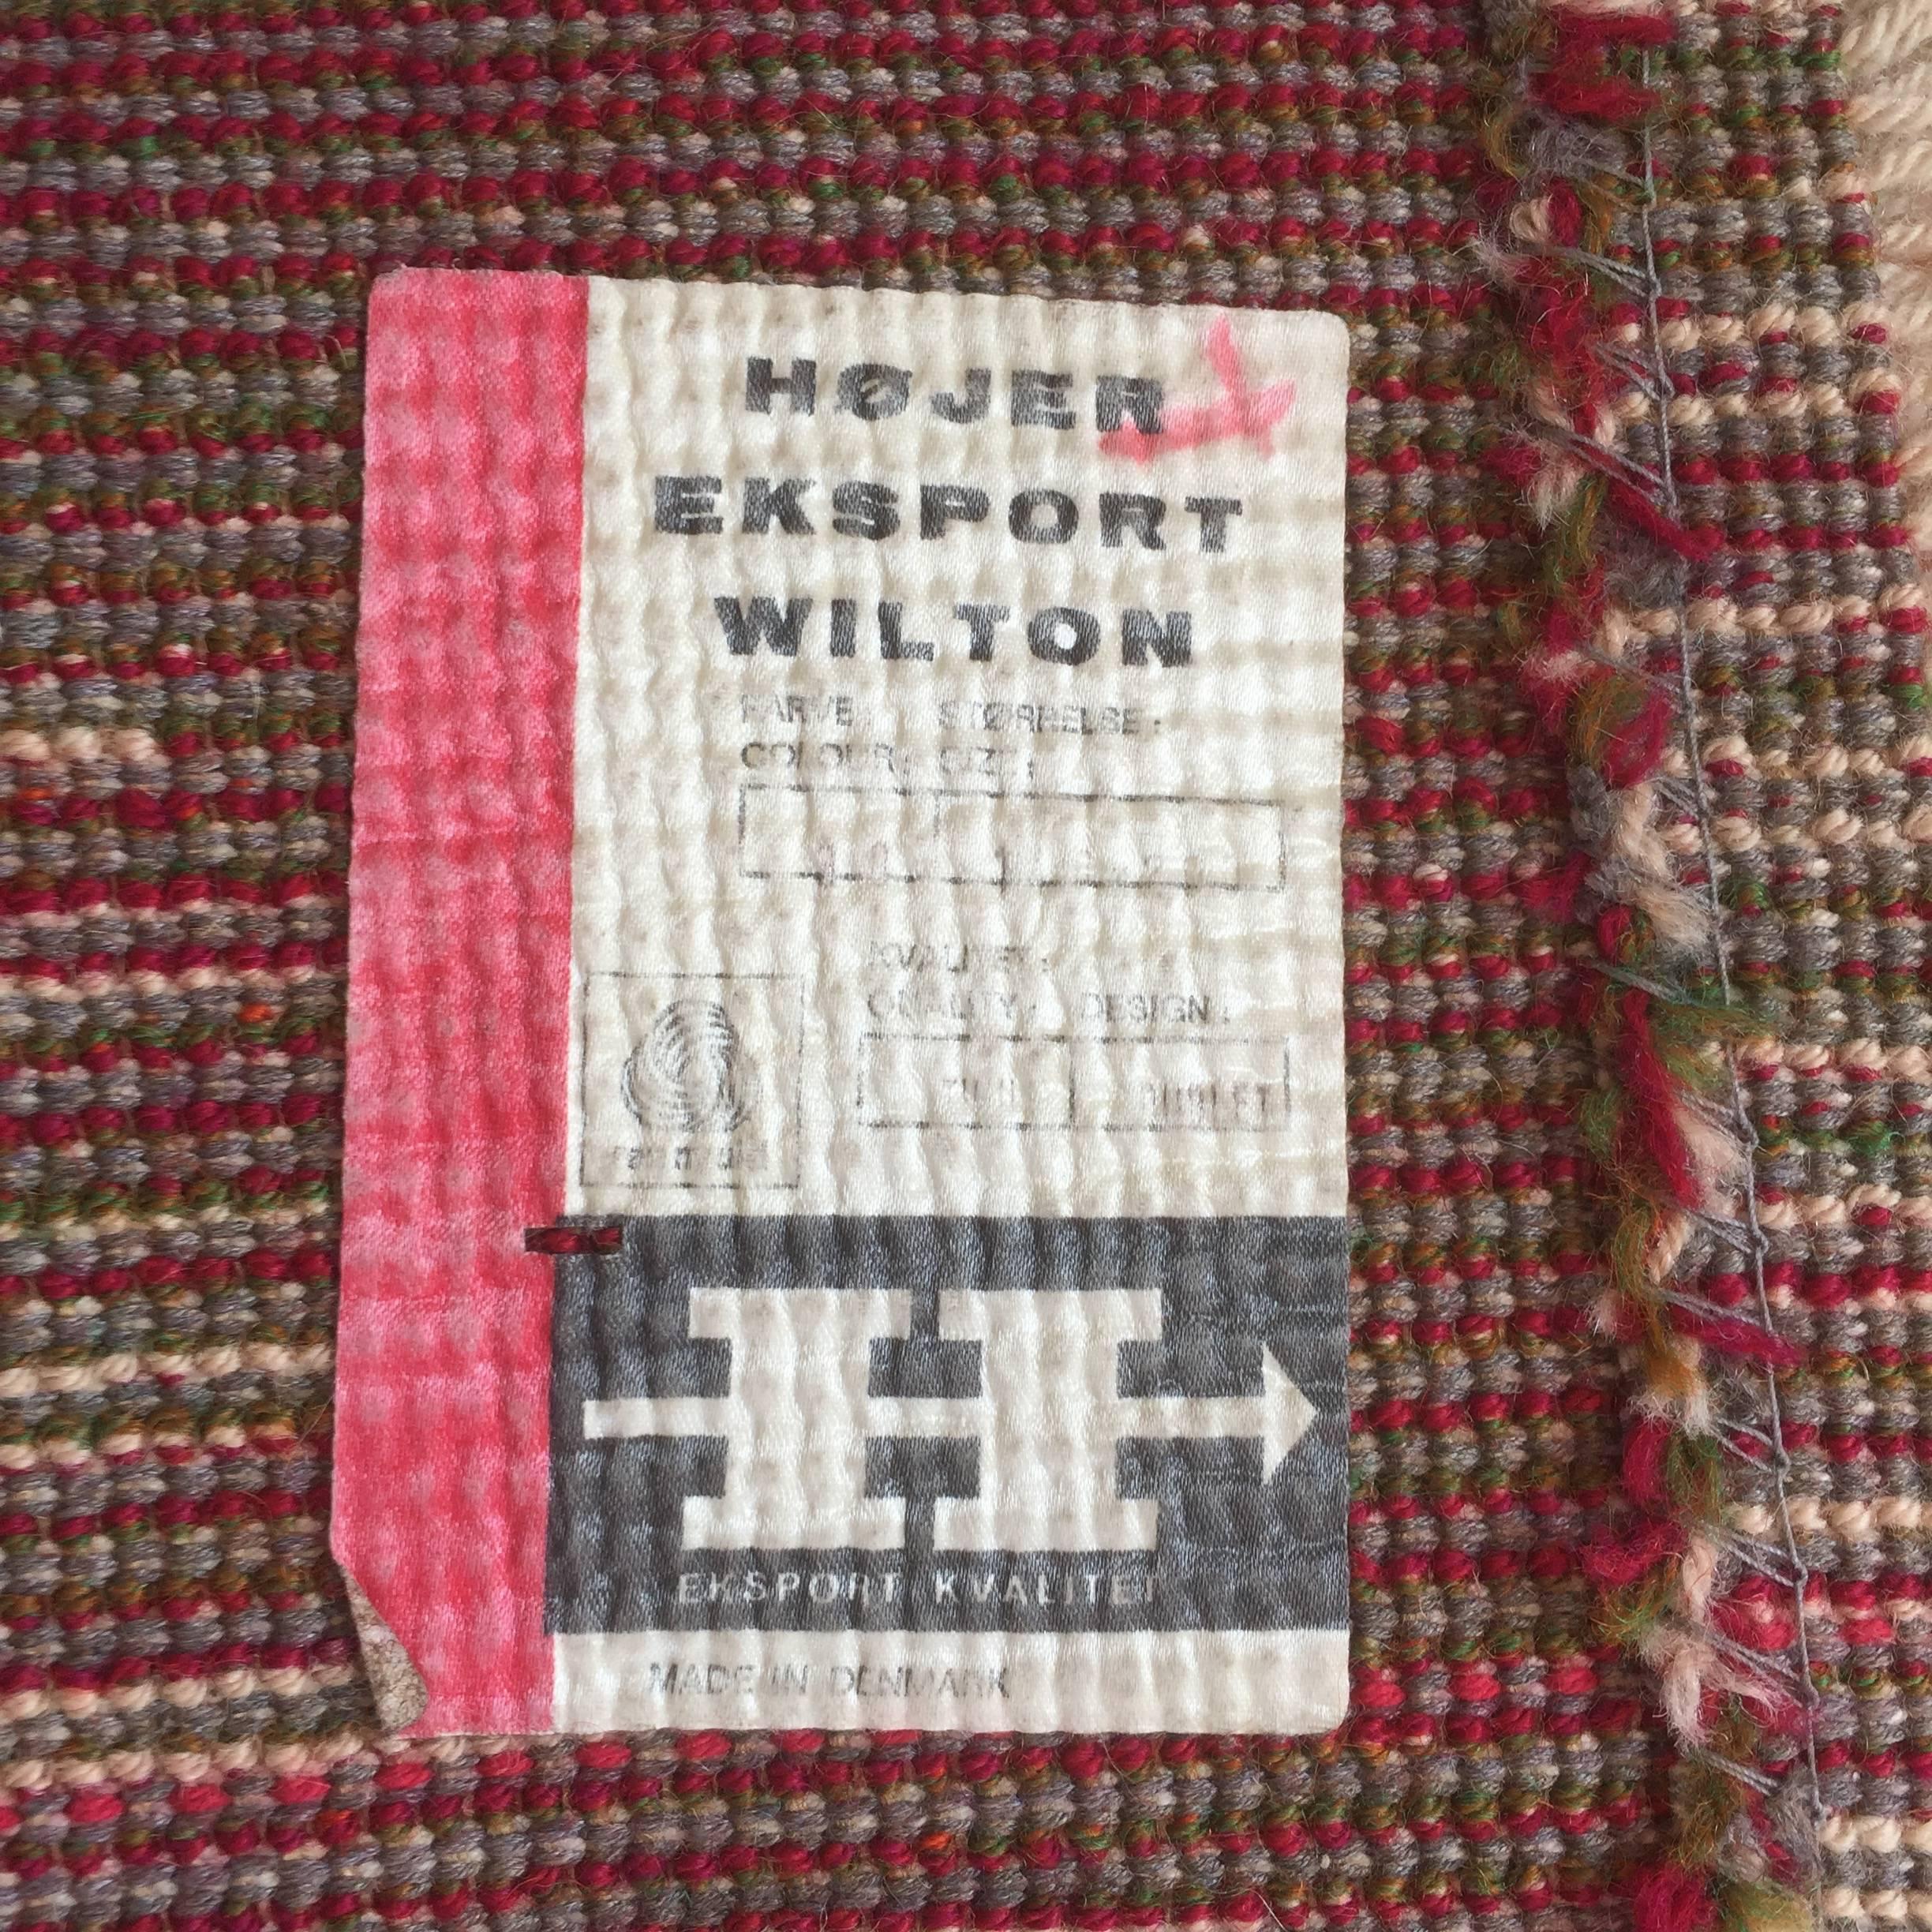 Danish Modern Wool Rya Rug Tapestry by Hojer Eksport Wilton, 1960s, Denmark 1